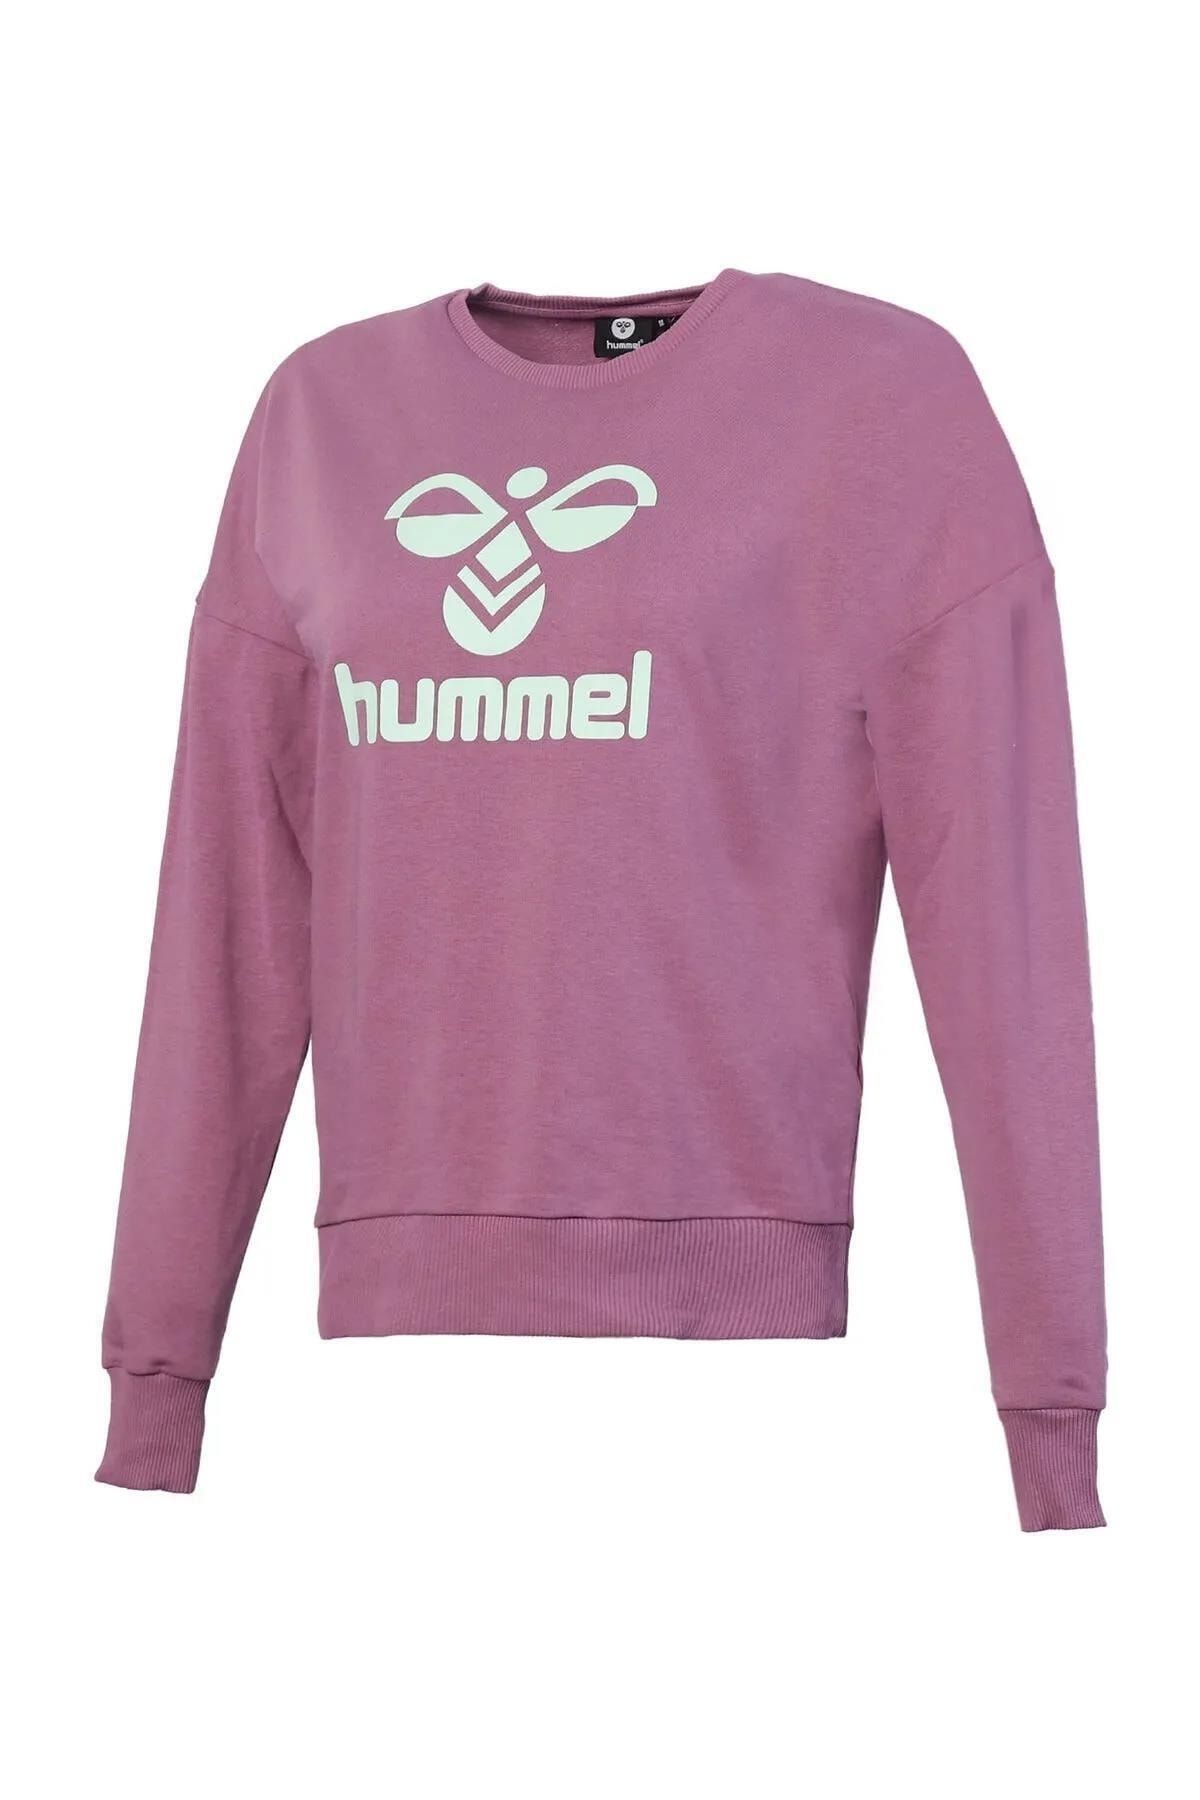 hummel 921461-3291 Helsinge Kadın Spor Ceket